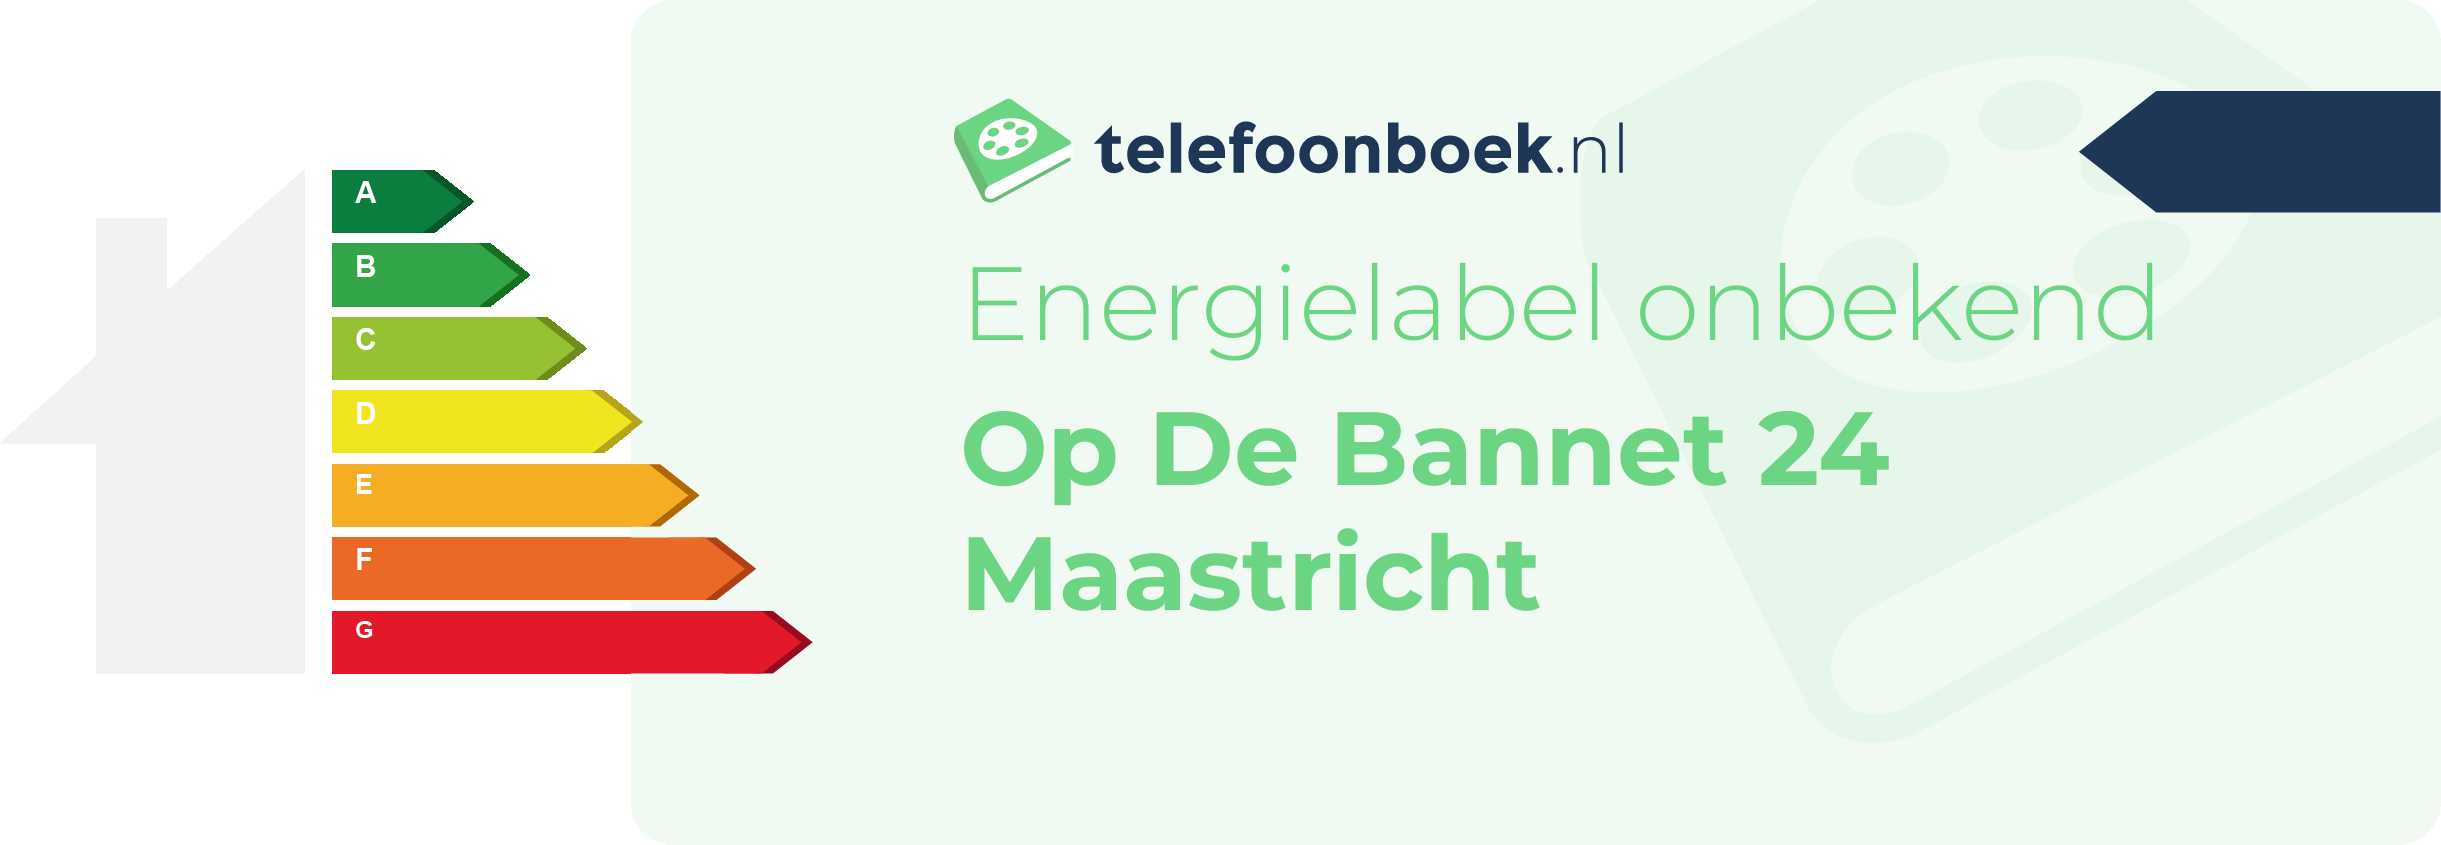 Energielabel Op De Bannet 24 Maastricht